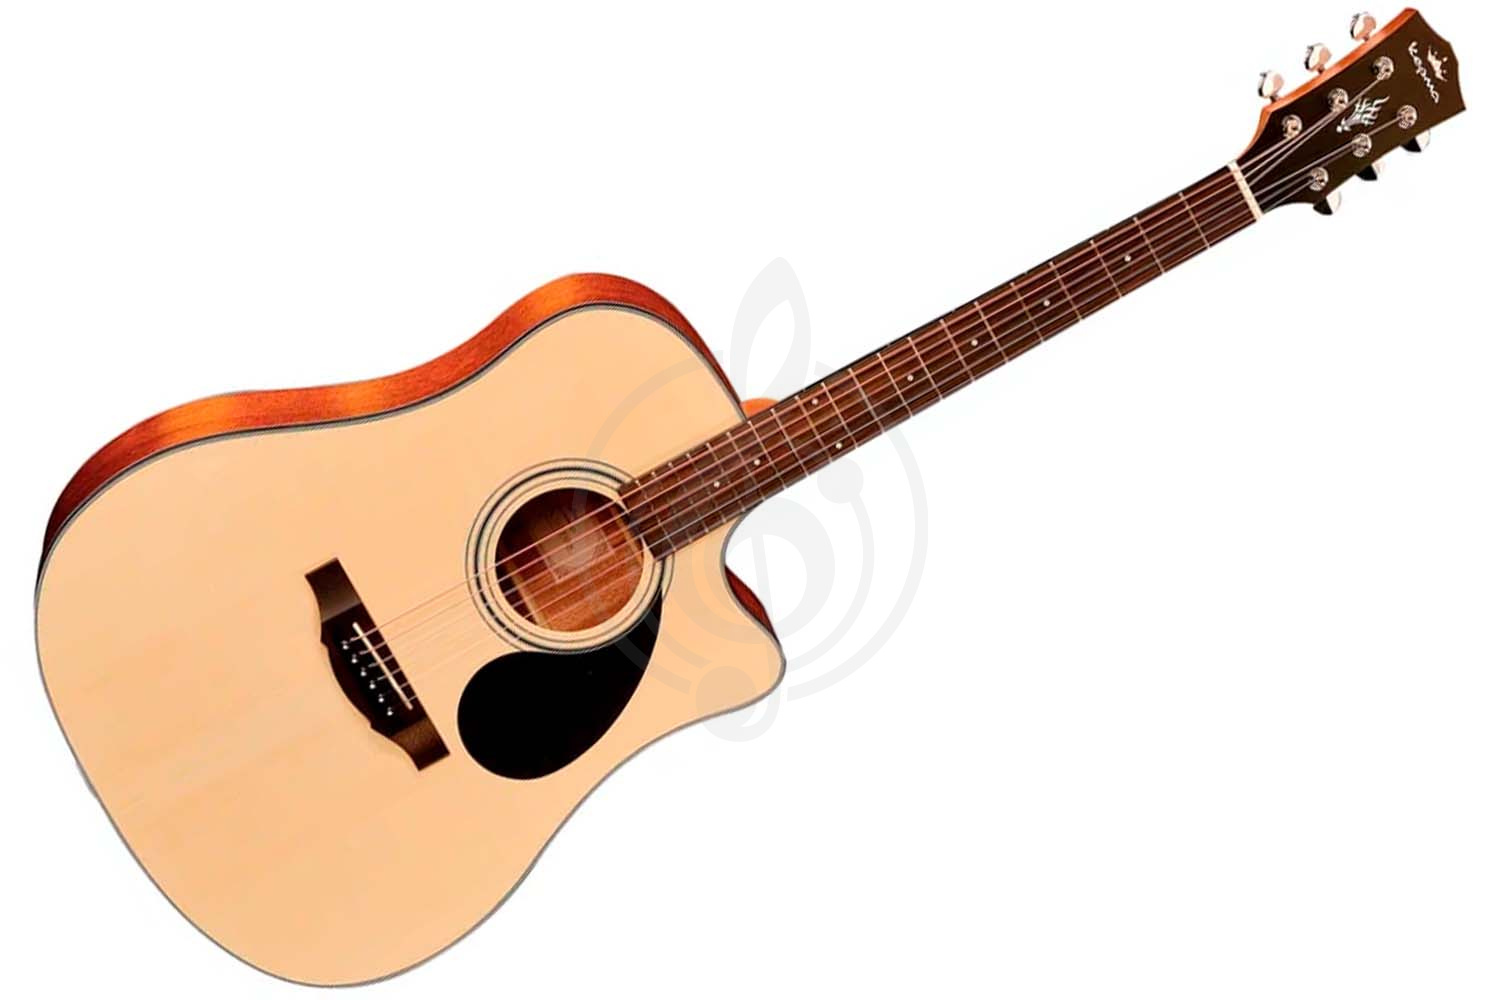 Трансакустическая гитара KEPMA EDCE K10 Natural Matt трансакустическая гитара, цвет натуральный, в комплекте 3м кабель, KEPMA EDCE K10 Natural Matt в магазине DominantaMusic - фото 1